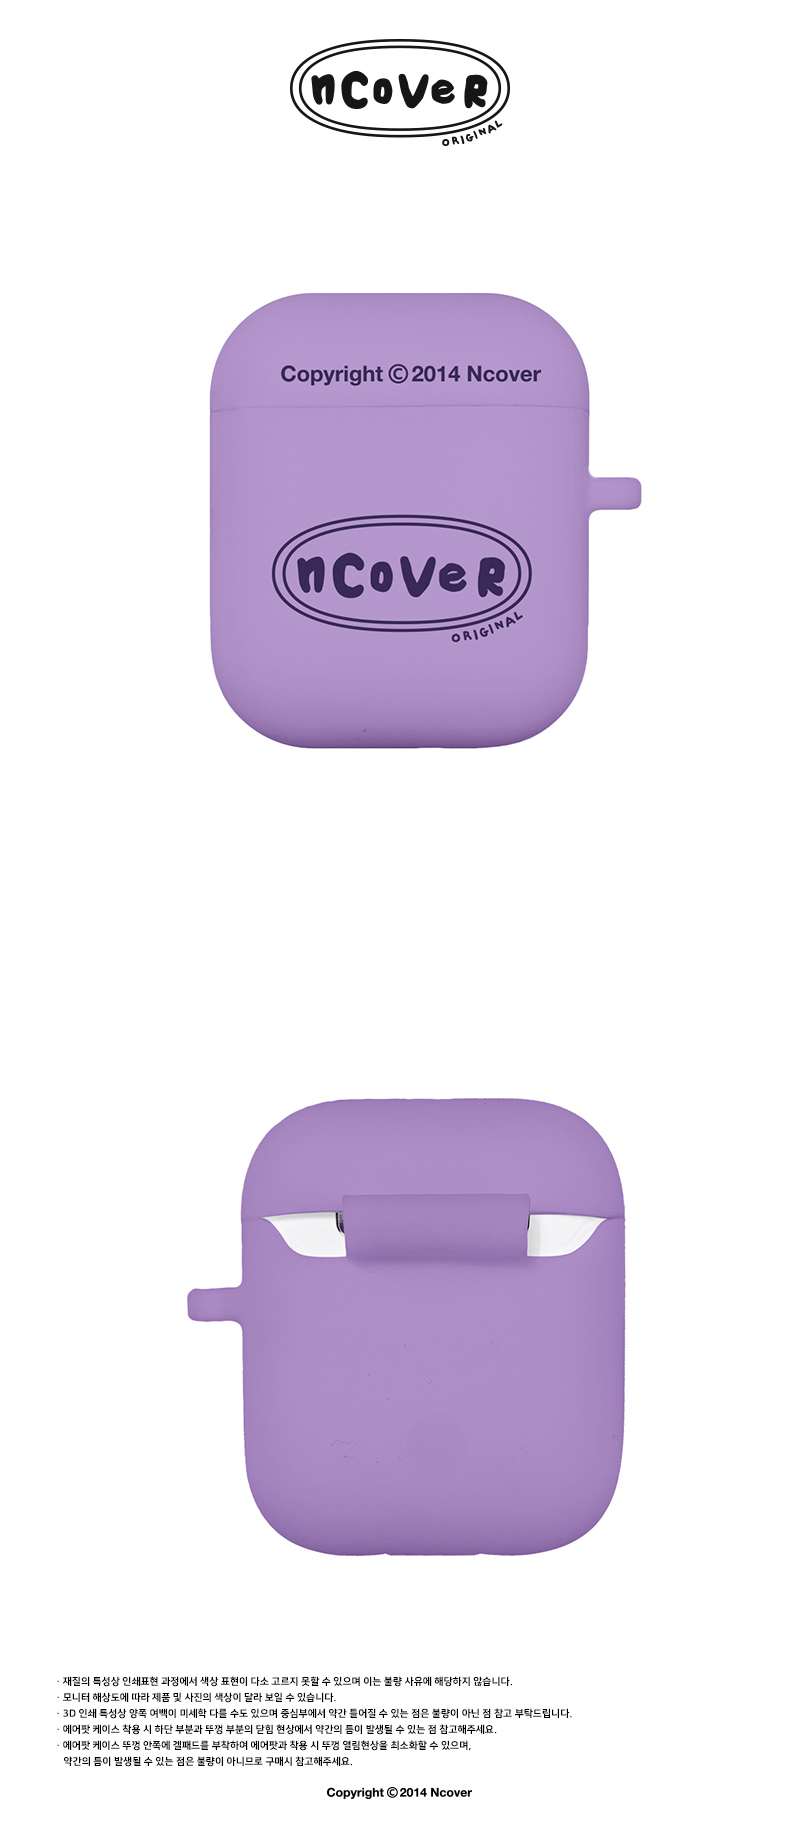  [N]Twentys original case-purple(airpods)  19,000원 - 바이인터내셔널주식회사 디지털, 이어폰/헤드폰, 이어폰/헤드폰 액세서리, 에어팟/에어팟프로 케이스 바보사랑  [N]Twentys original case-purple(airpods)  19,000원 - 바이인터내셔널주식회사 디지털, 이어폰/헤드폰, 이어폰/헤드폰 액세서리, 에어팟/에어팟프로 케이스 바보사랑